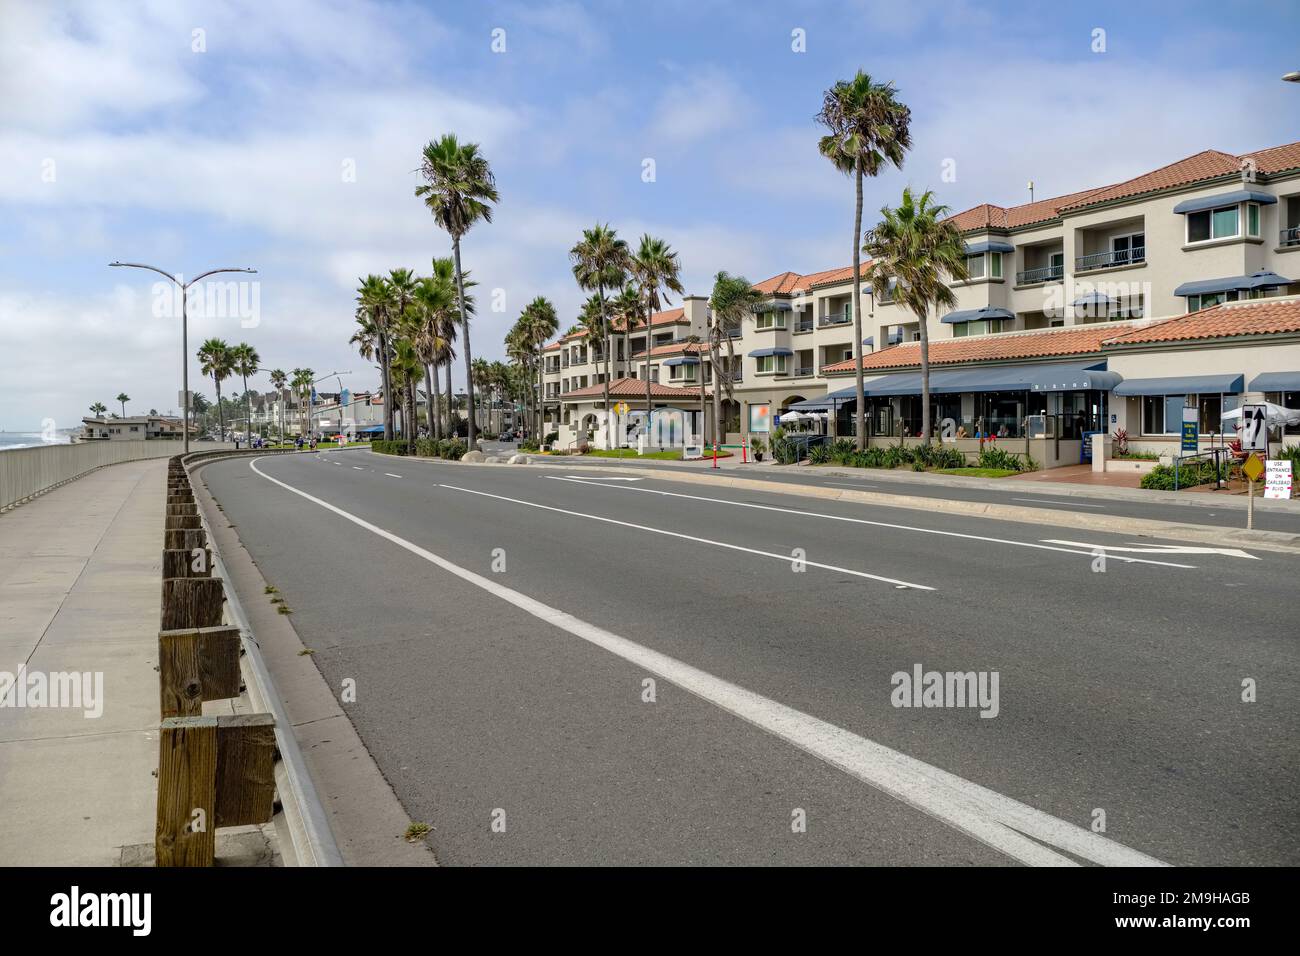 Vista sulla città con strada, palme e case, Carlsbad Boulevard, Carlsbad, California, Stati Uniti Foto Stock